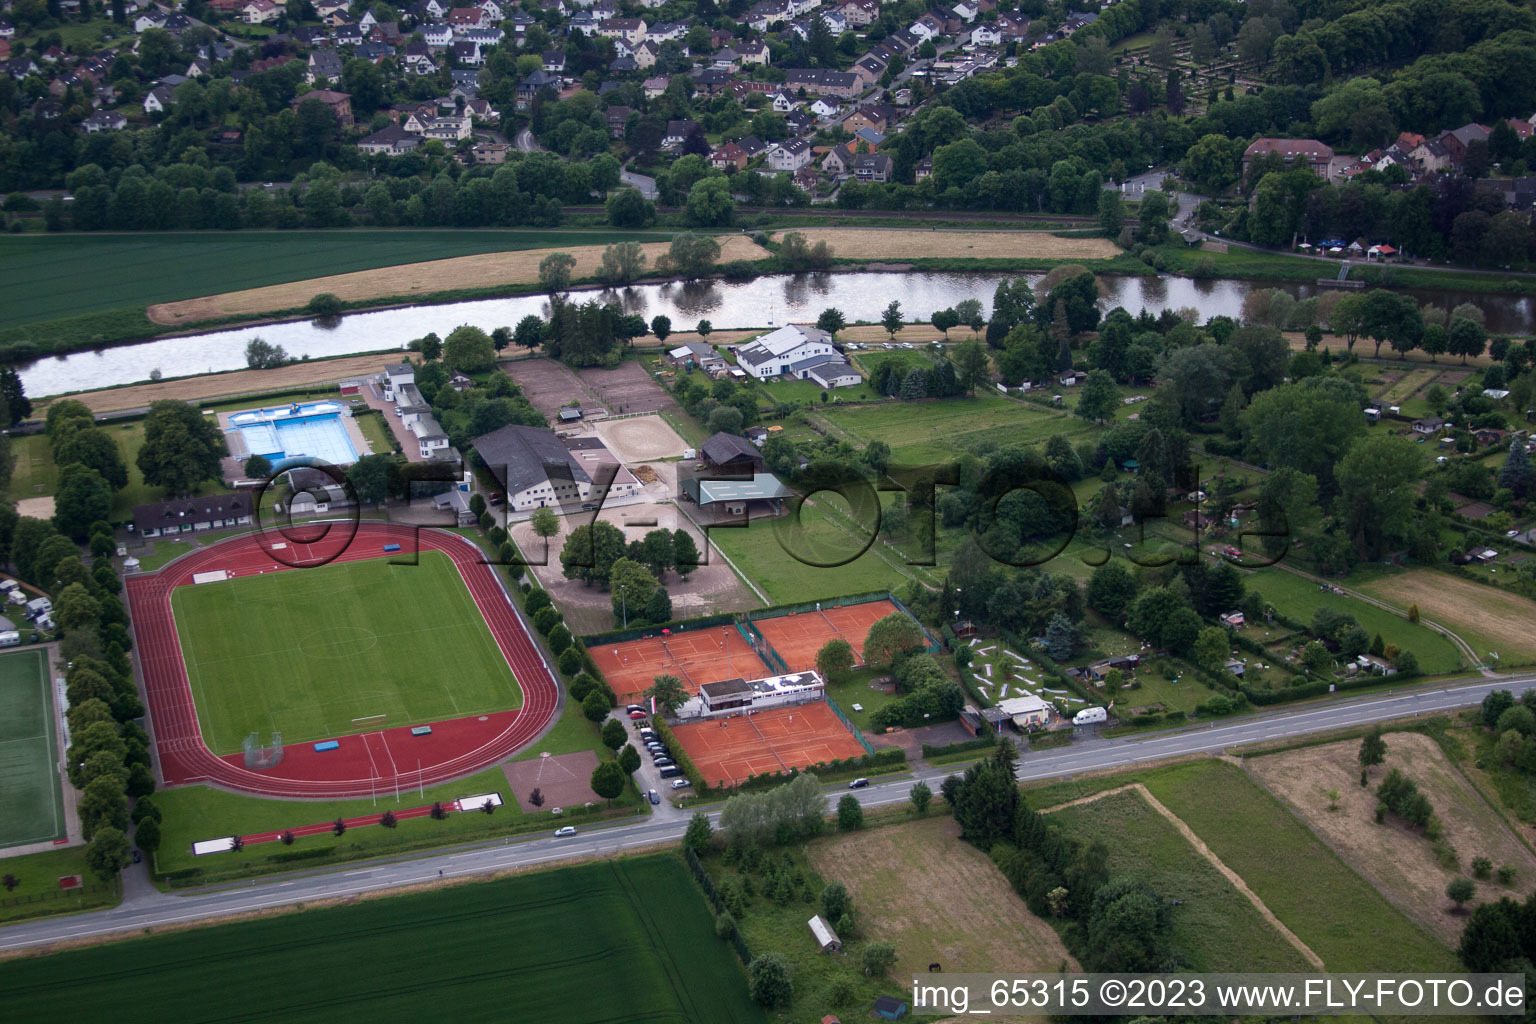 Aerial view of Höxter in the state North Rhine-Westphalia, Germany